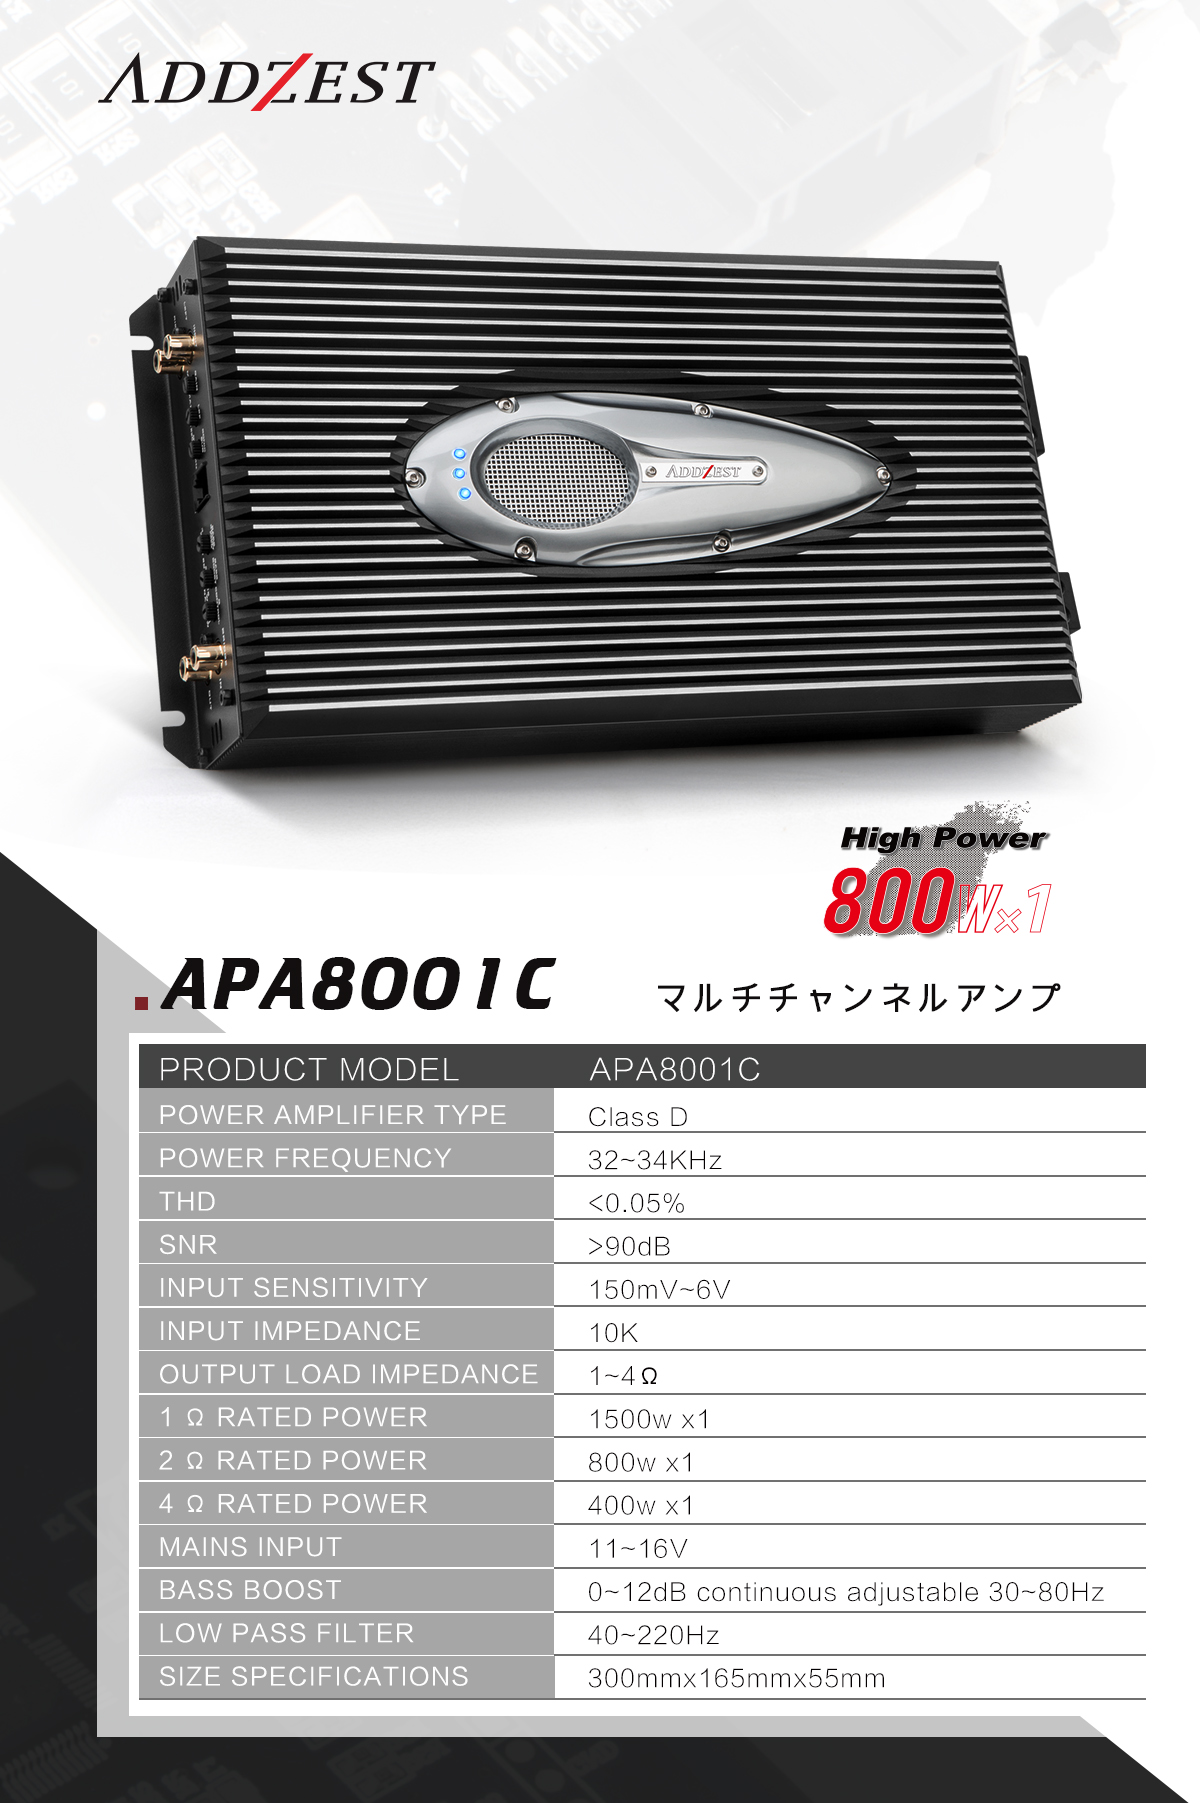  APA8001C